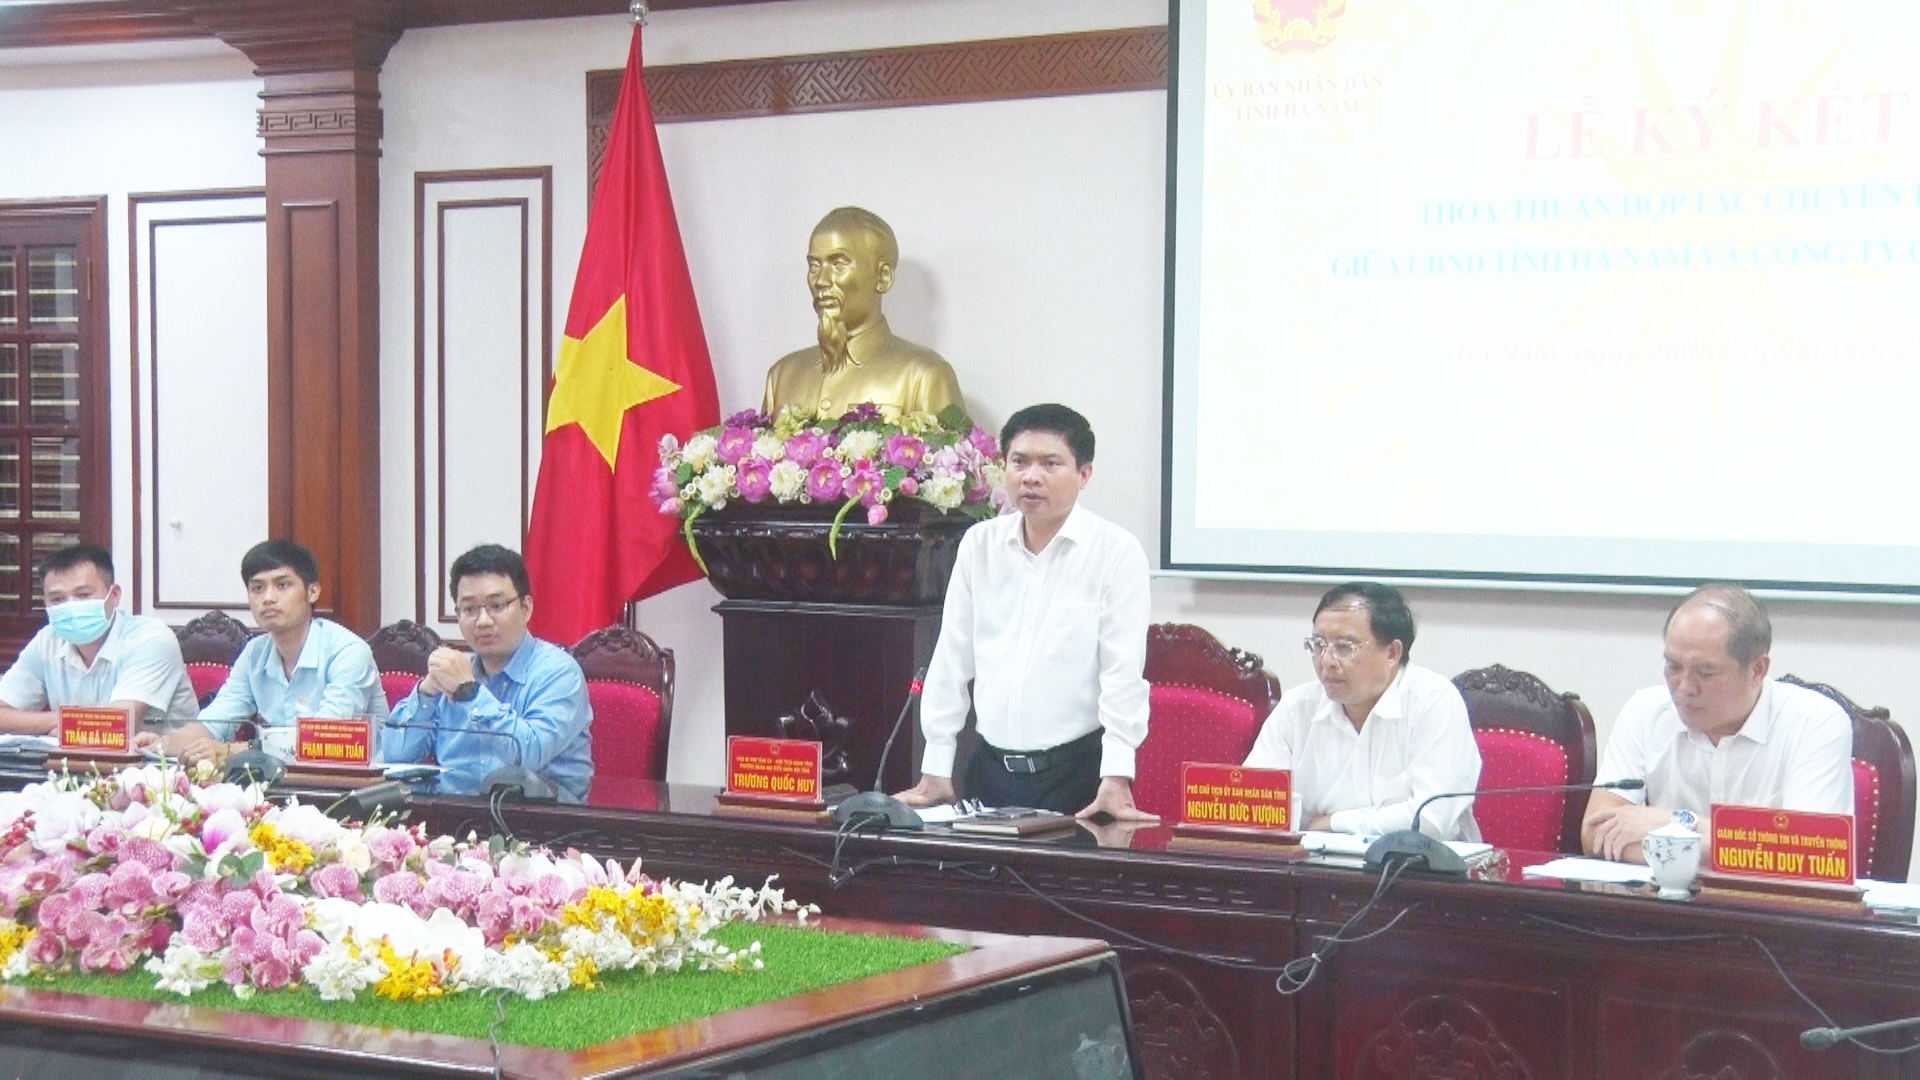 Đồng chí Trương Quốc Huy, Phó Bí thư Tỉnh ủy, Chủ tịch UBND tỉnh Hà Nam phát biểu tại sự kiện.